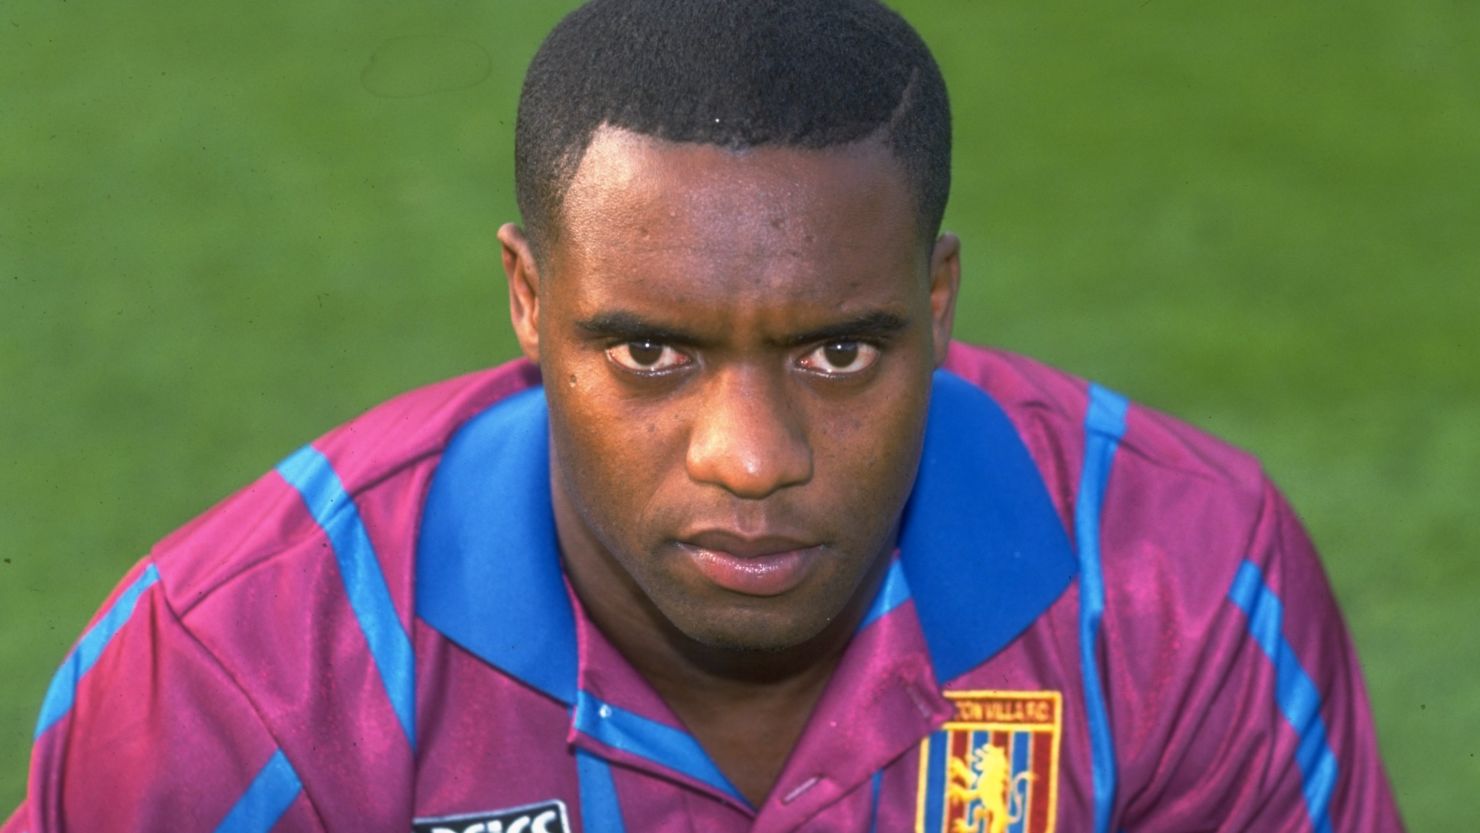 Dalian Atkinson, pictured in his Aston Villa kit in 1993.